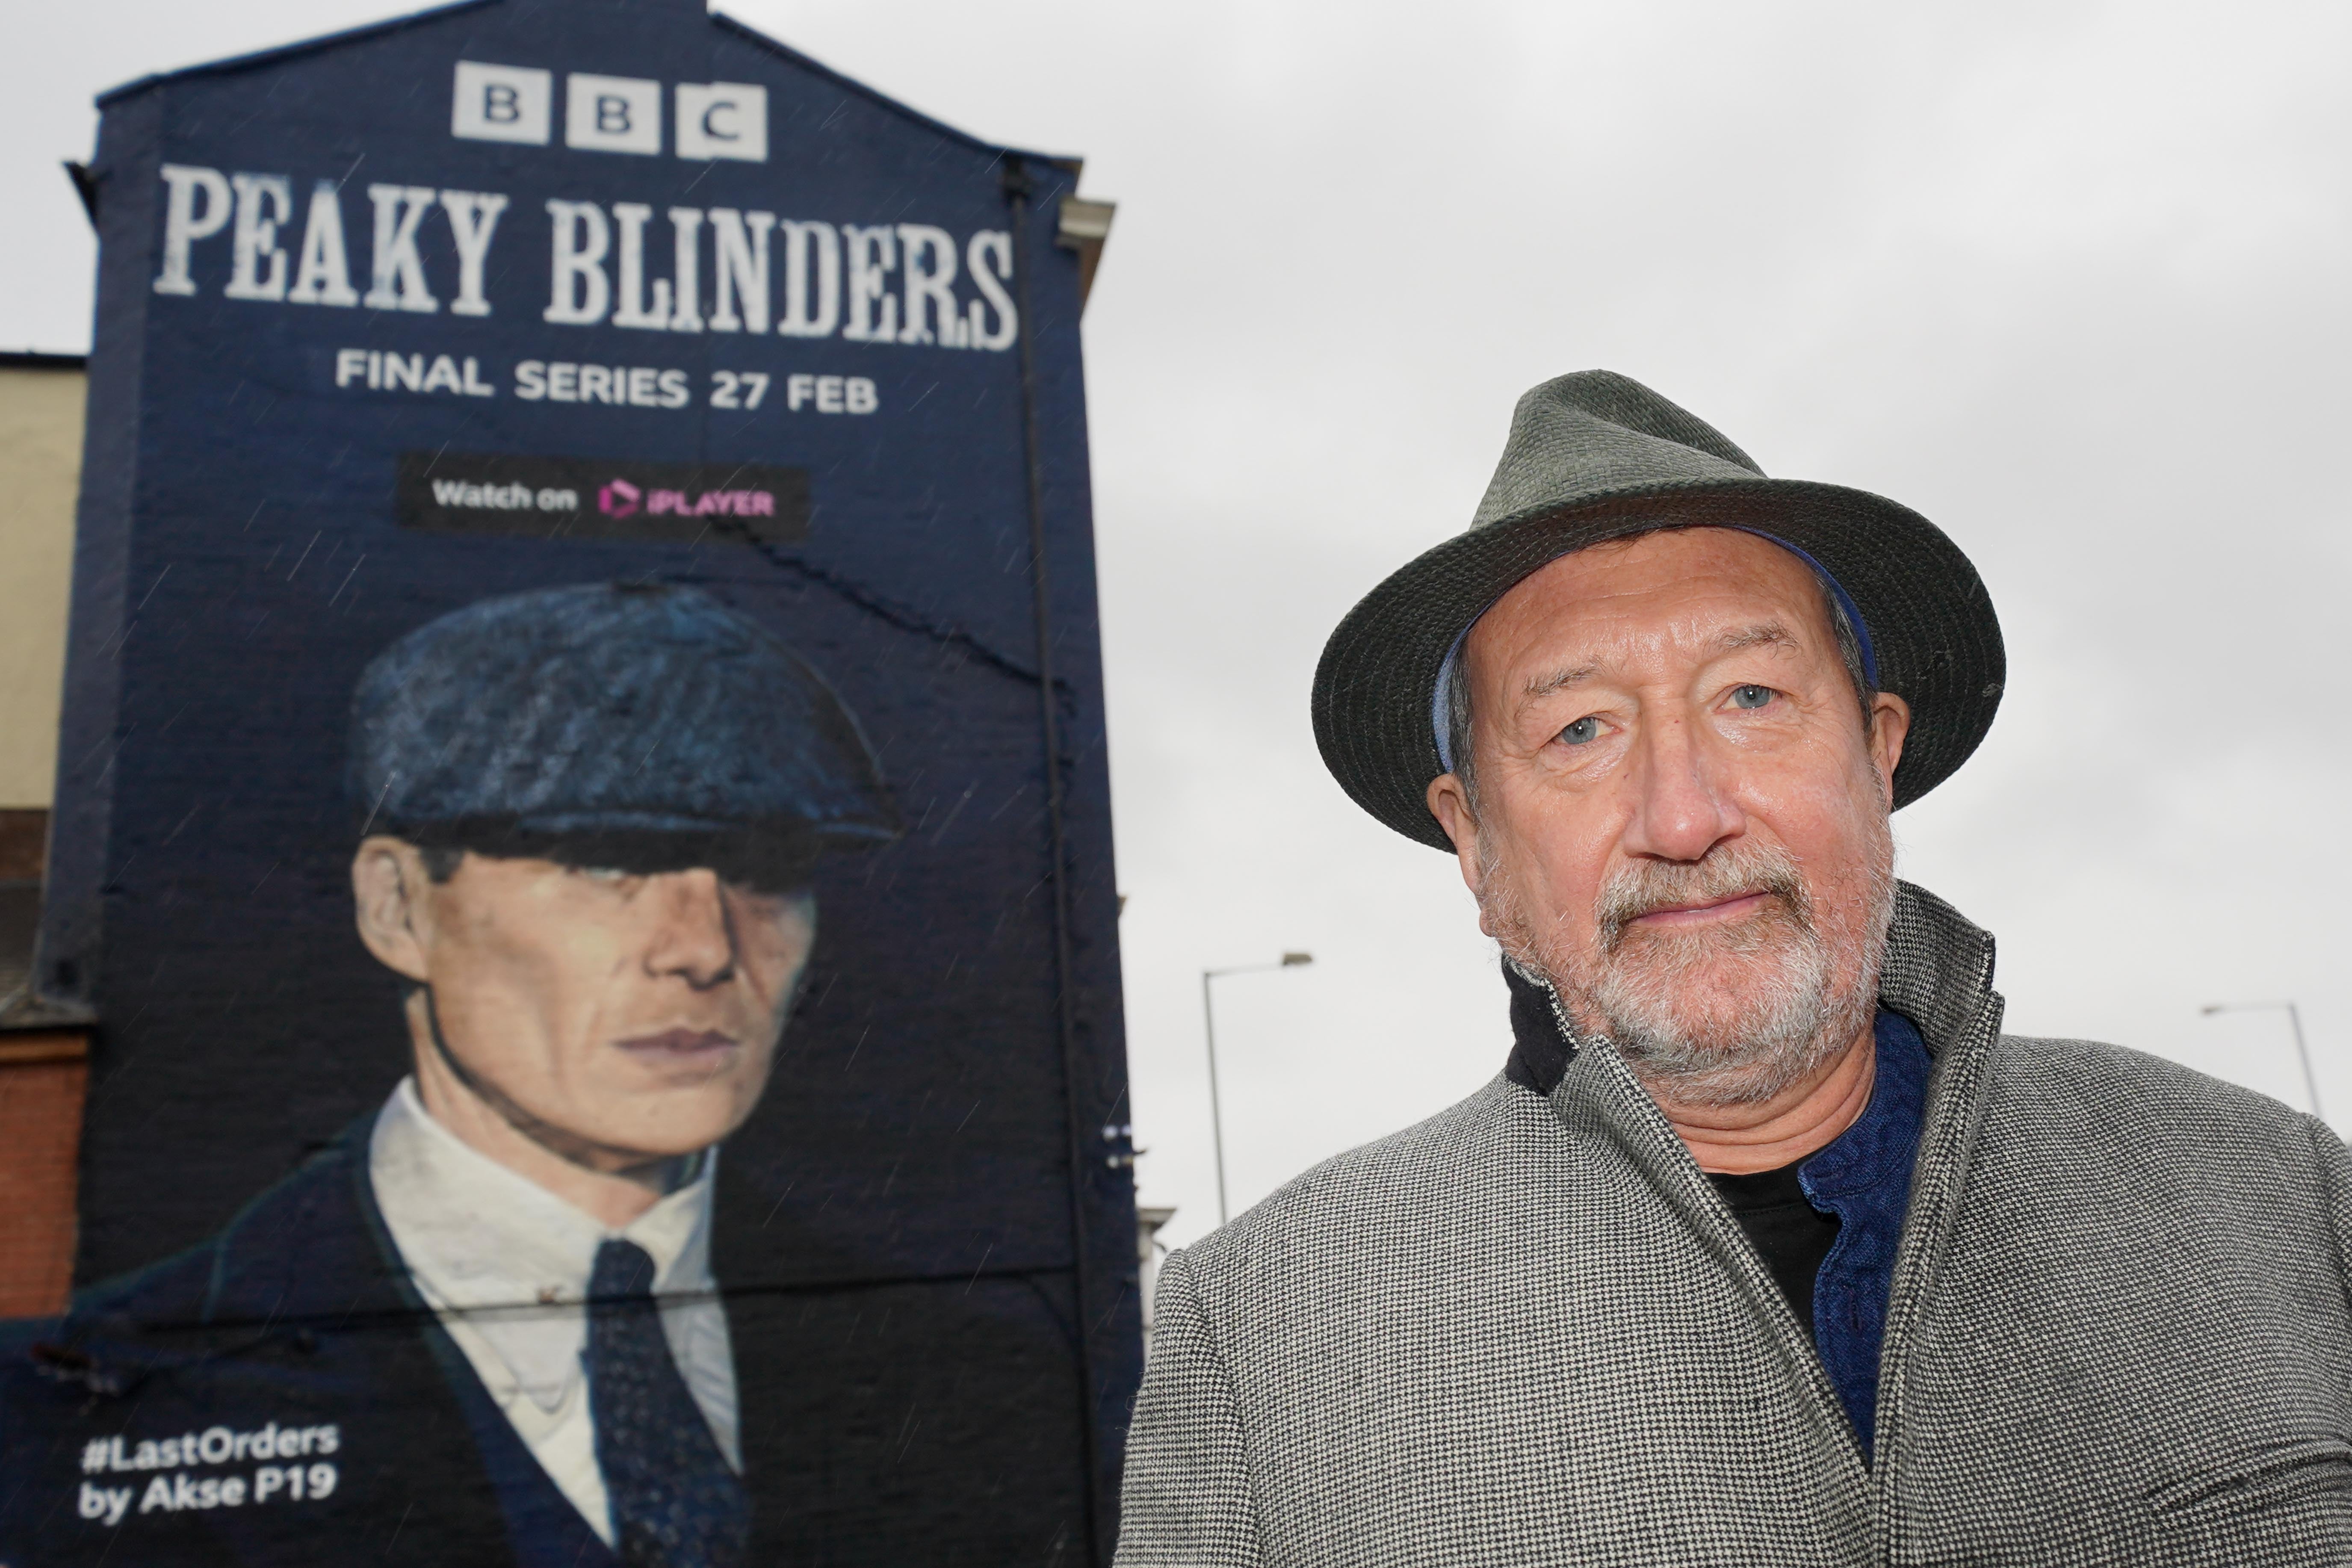 Peaky Blinders movie gets big update from series creator